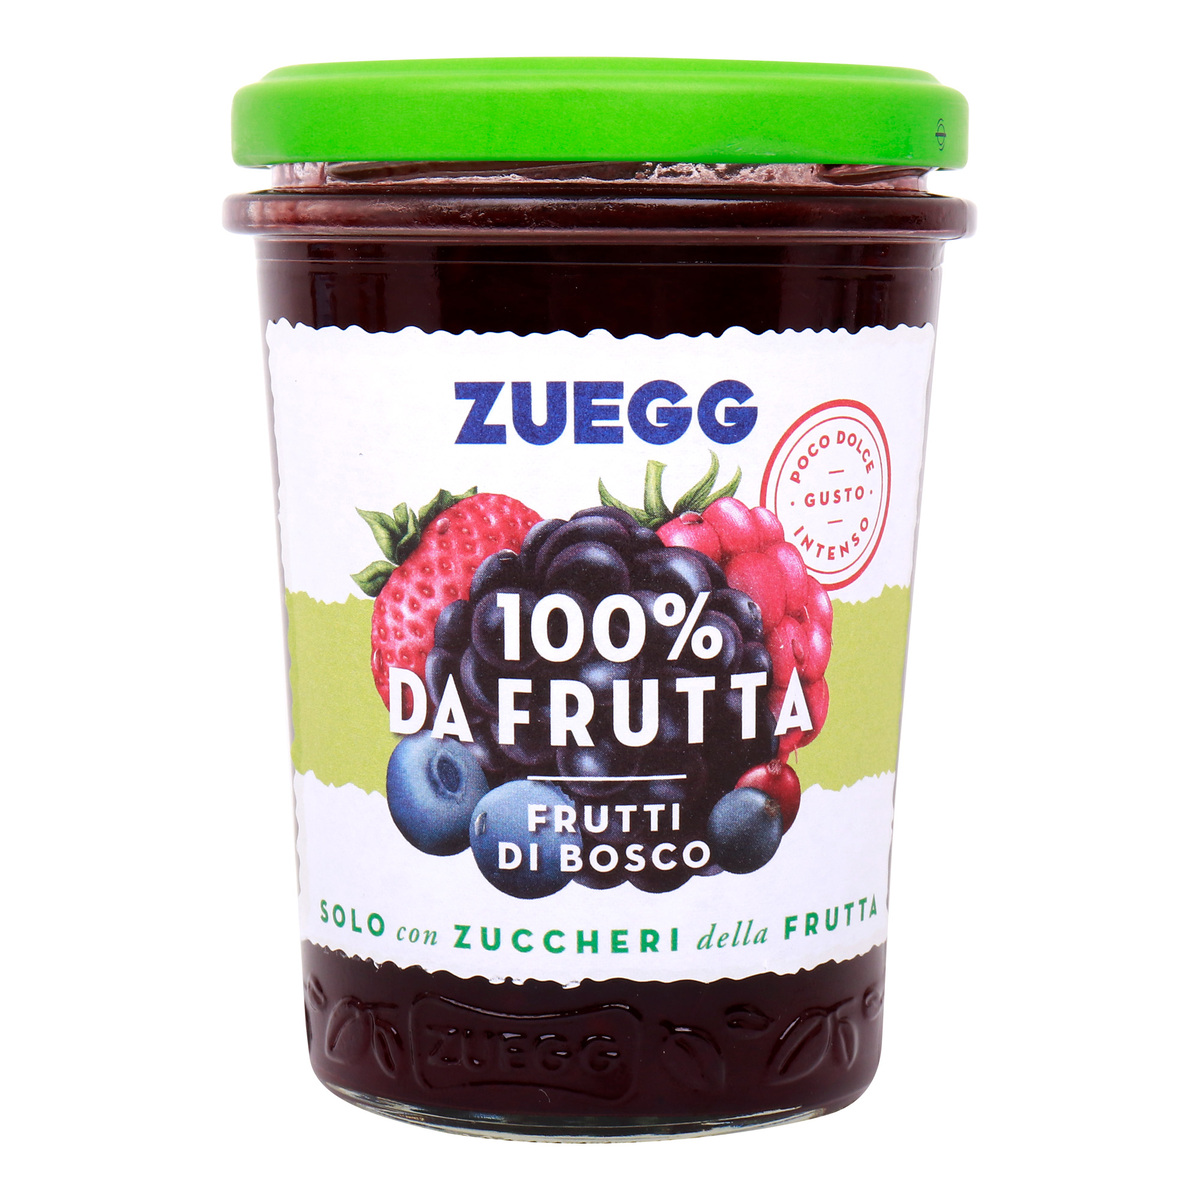 Zuegg 100% Fruits Mixed Berry Jam, 250 g